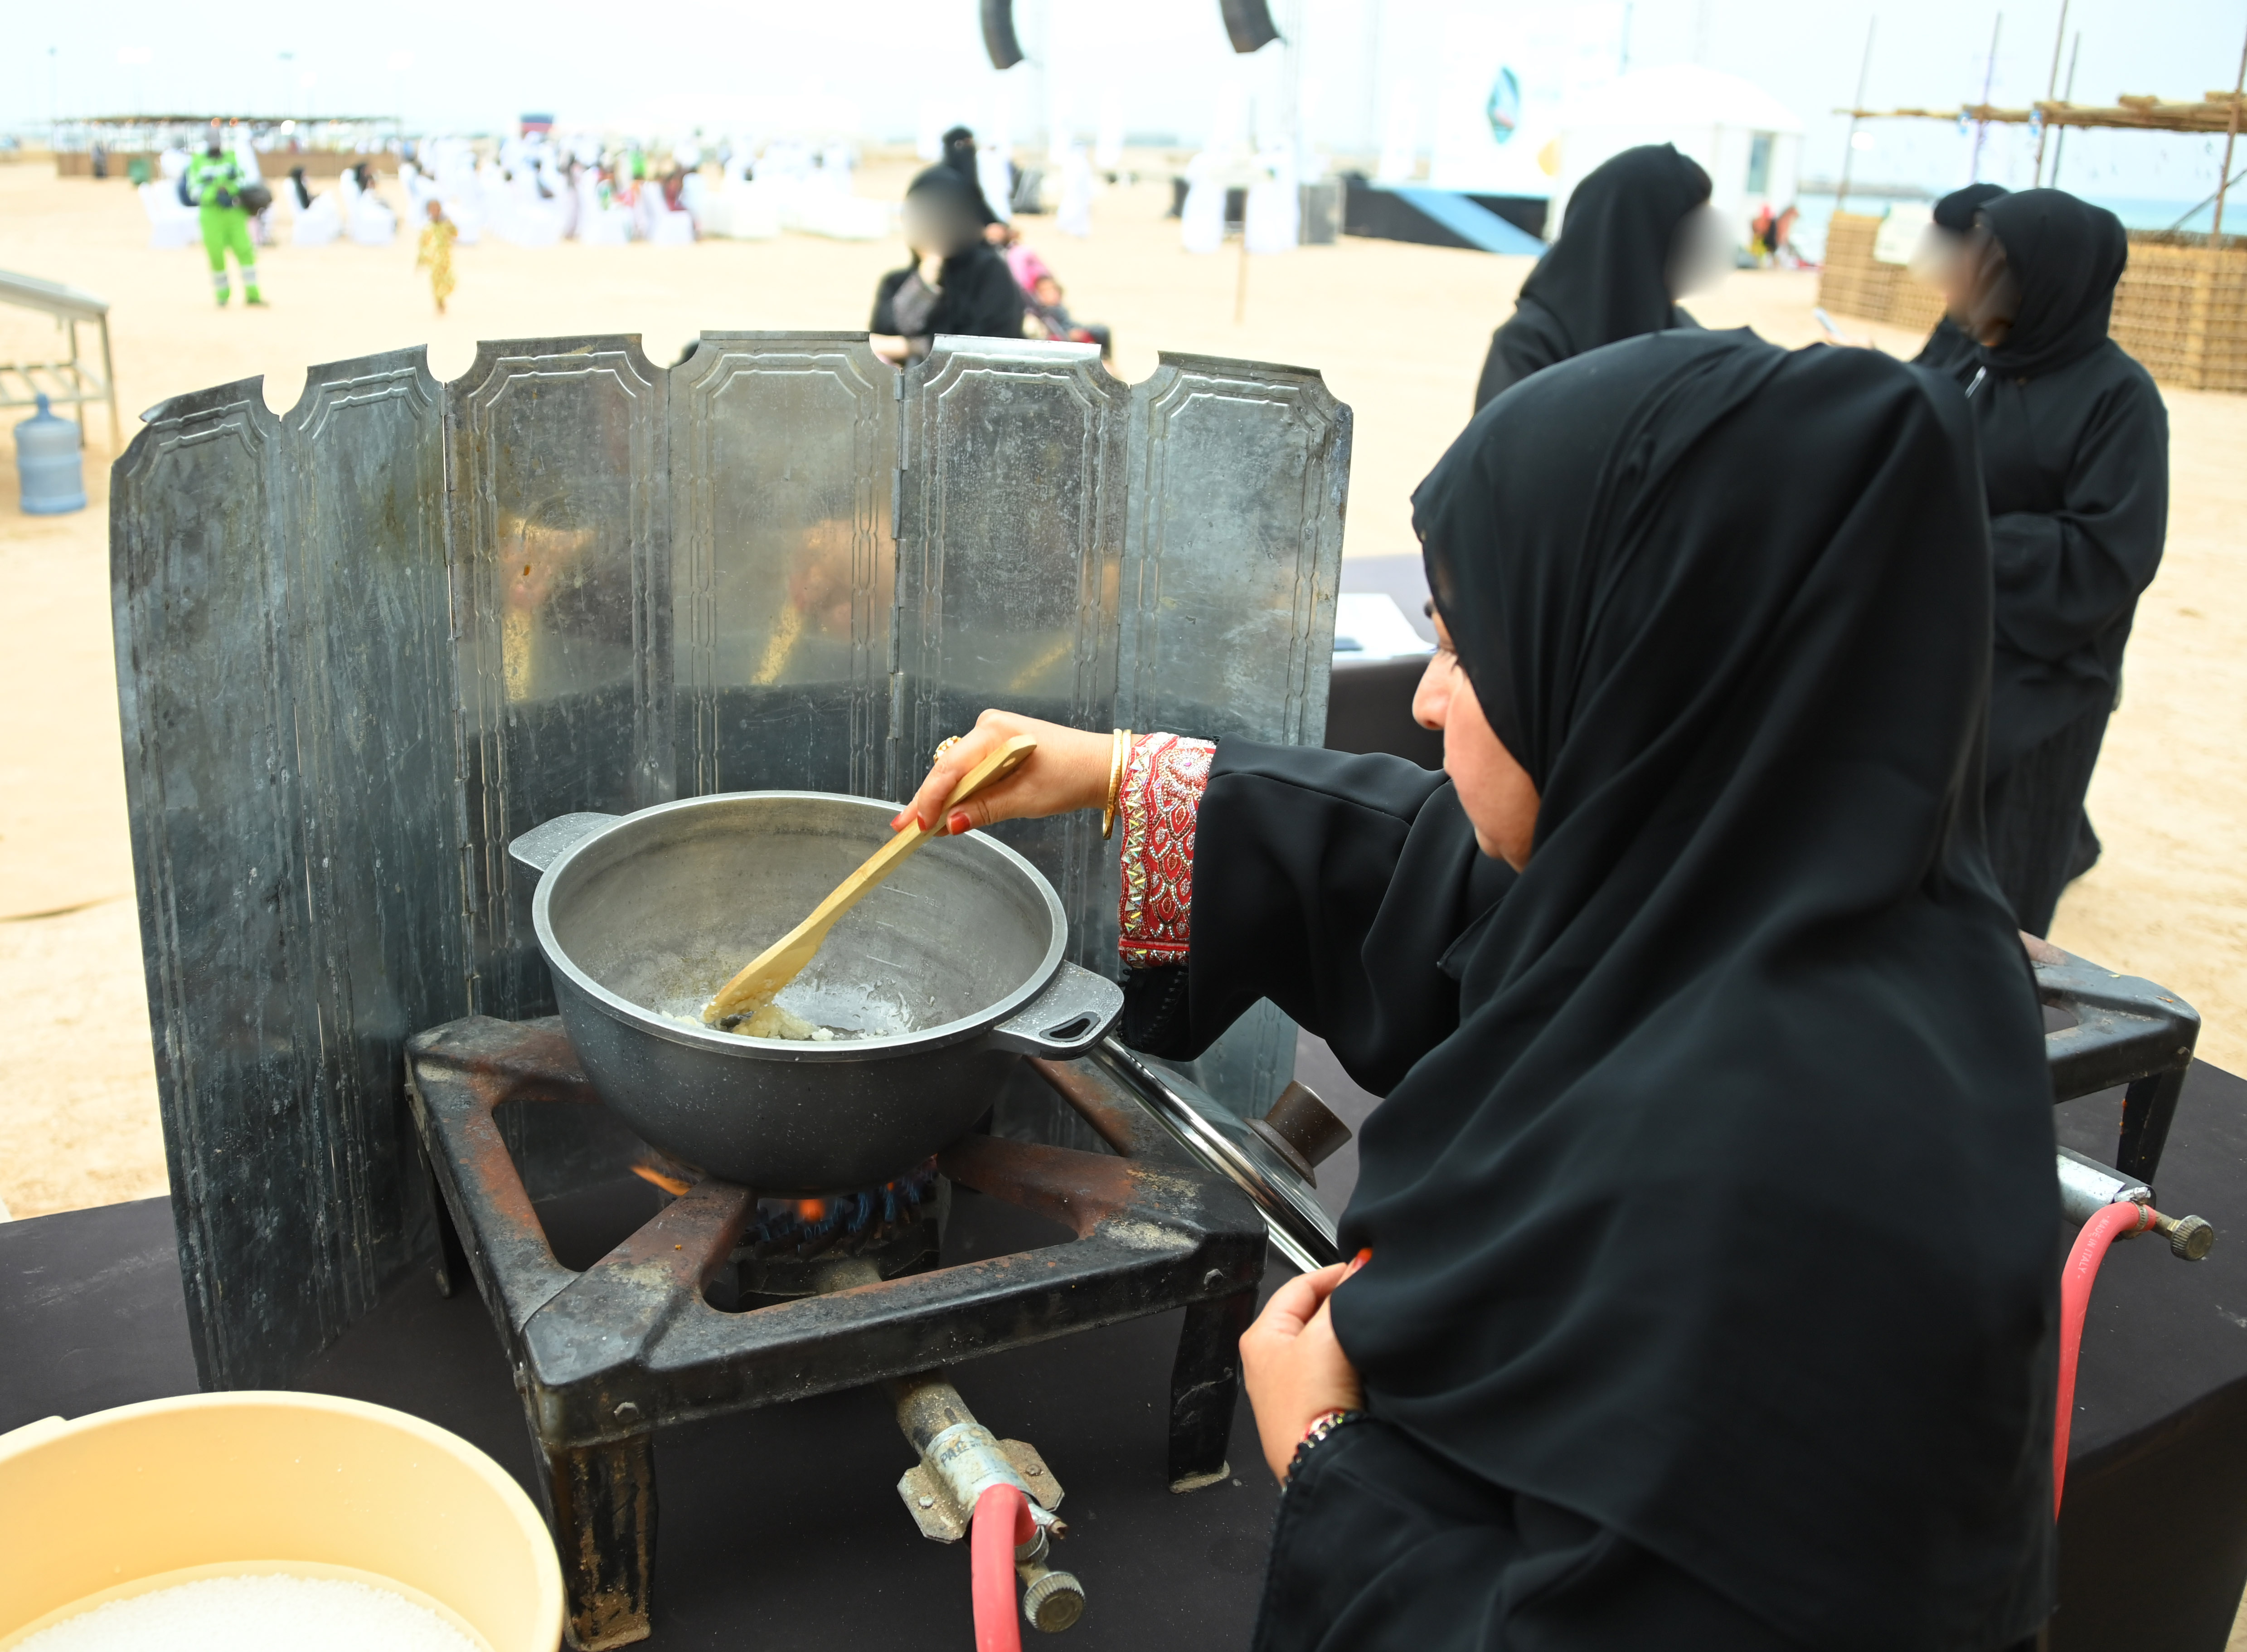 الطبخ في مهرجان دلما التاريخي.. أبعاد حضارية لثقافة الغذاء